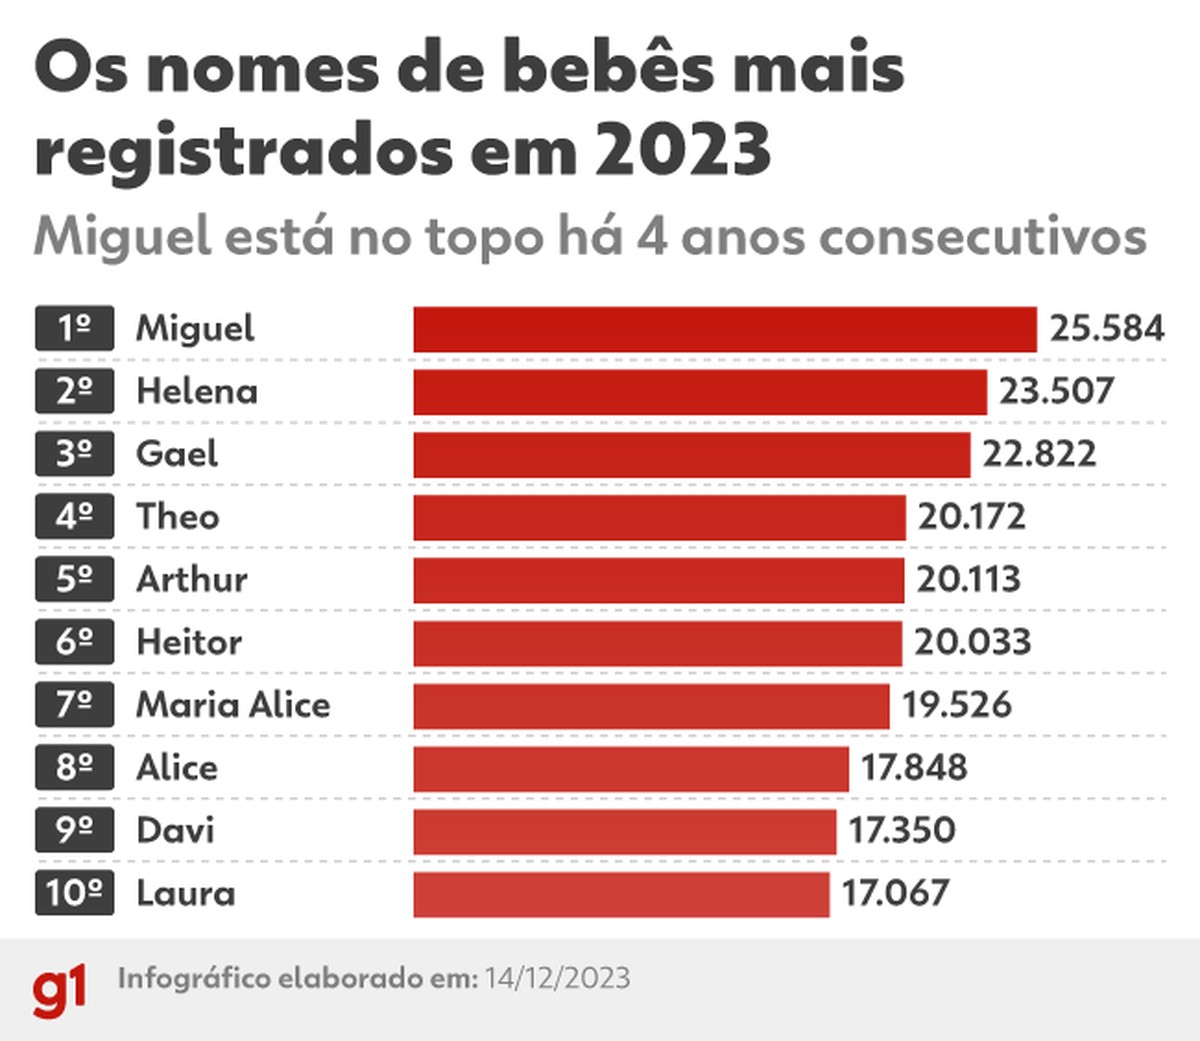 Miguel e Helena são os nomes mais registrados em 2023 Brasil